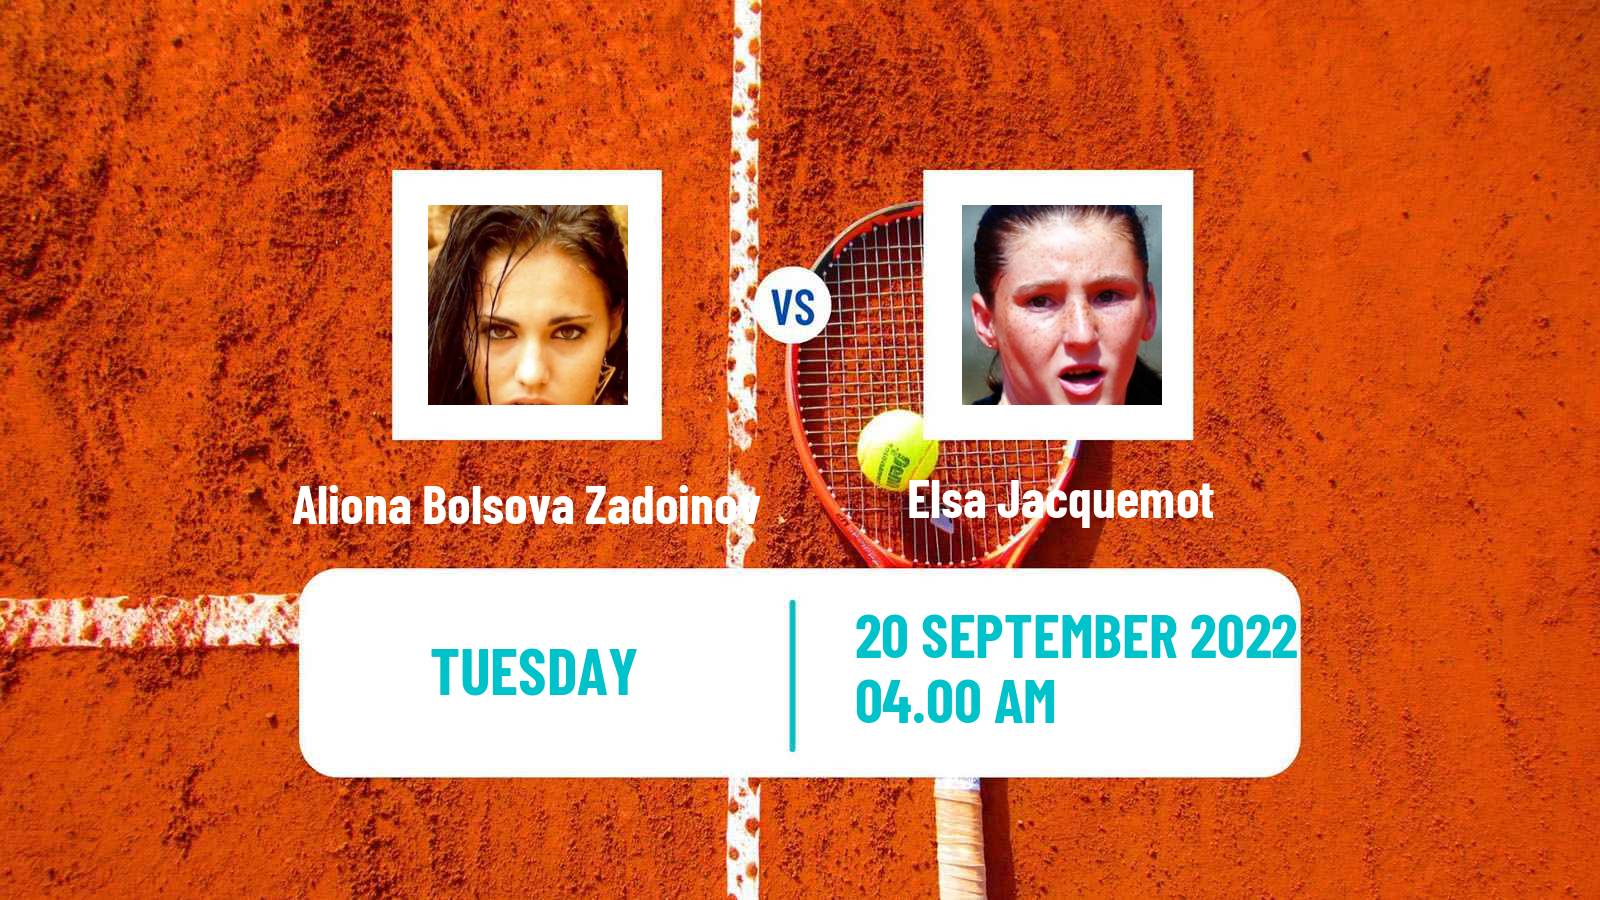 Tennis ITF Tournaments Aliona Bolsova Zadoinov - Elsa Jacquemot